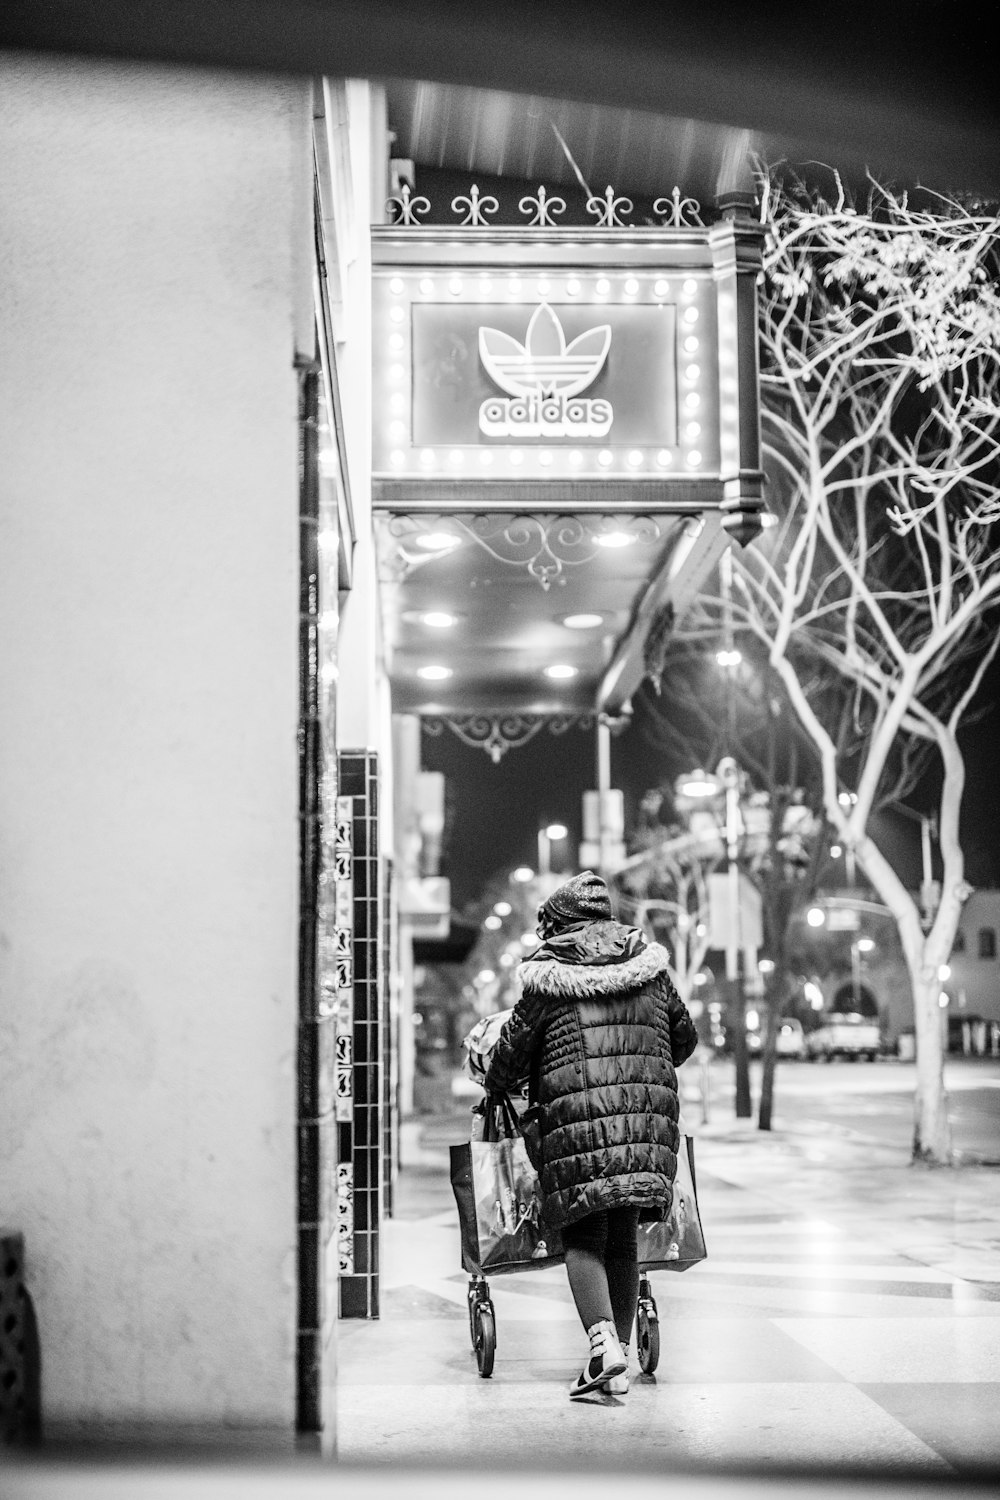 photo en niveaux de gris d’une personne marchant sur le trottoir près du magasin Adidas